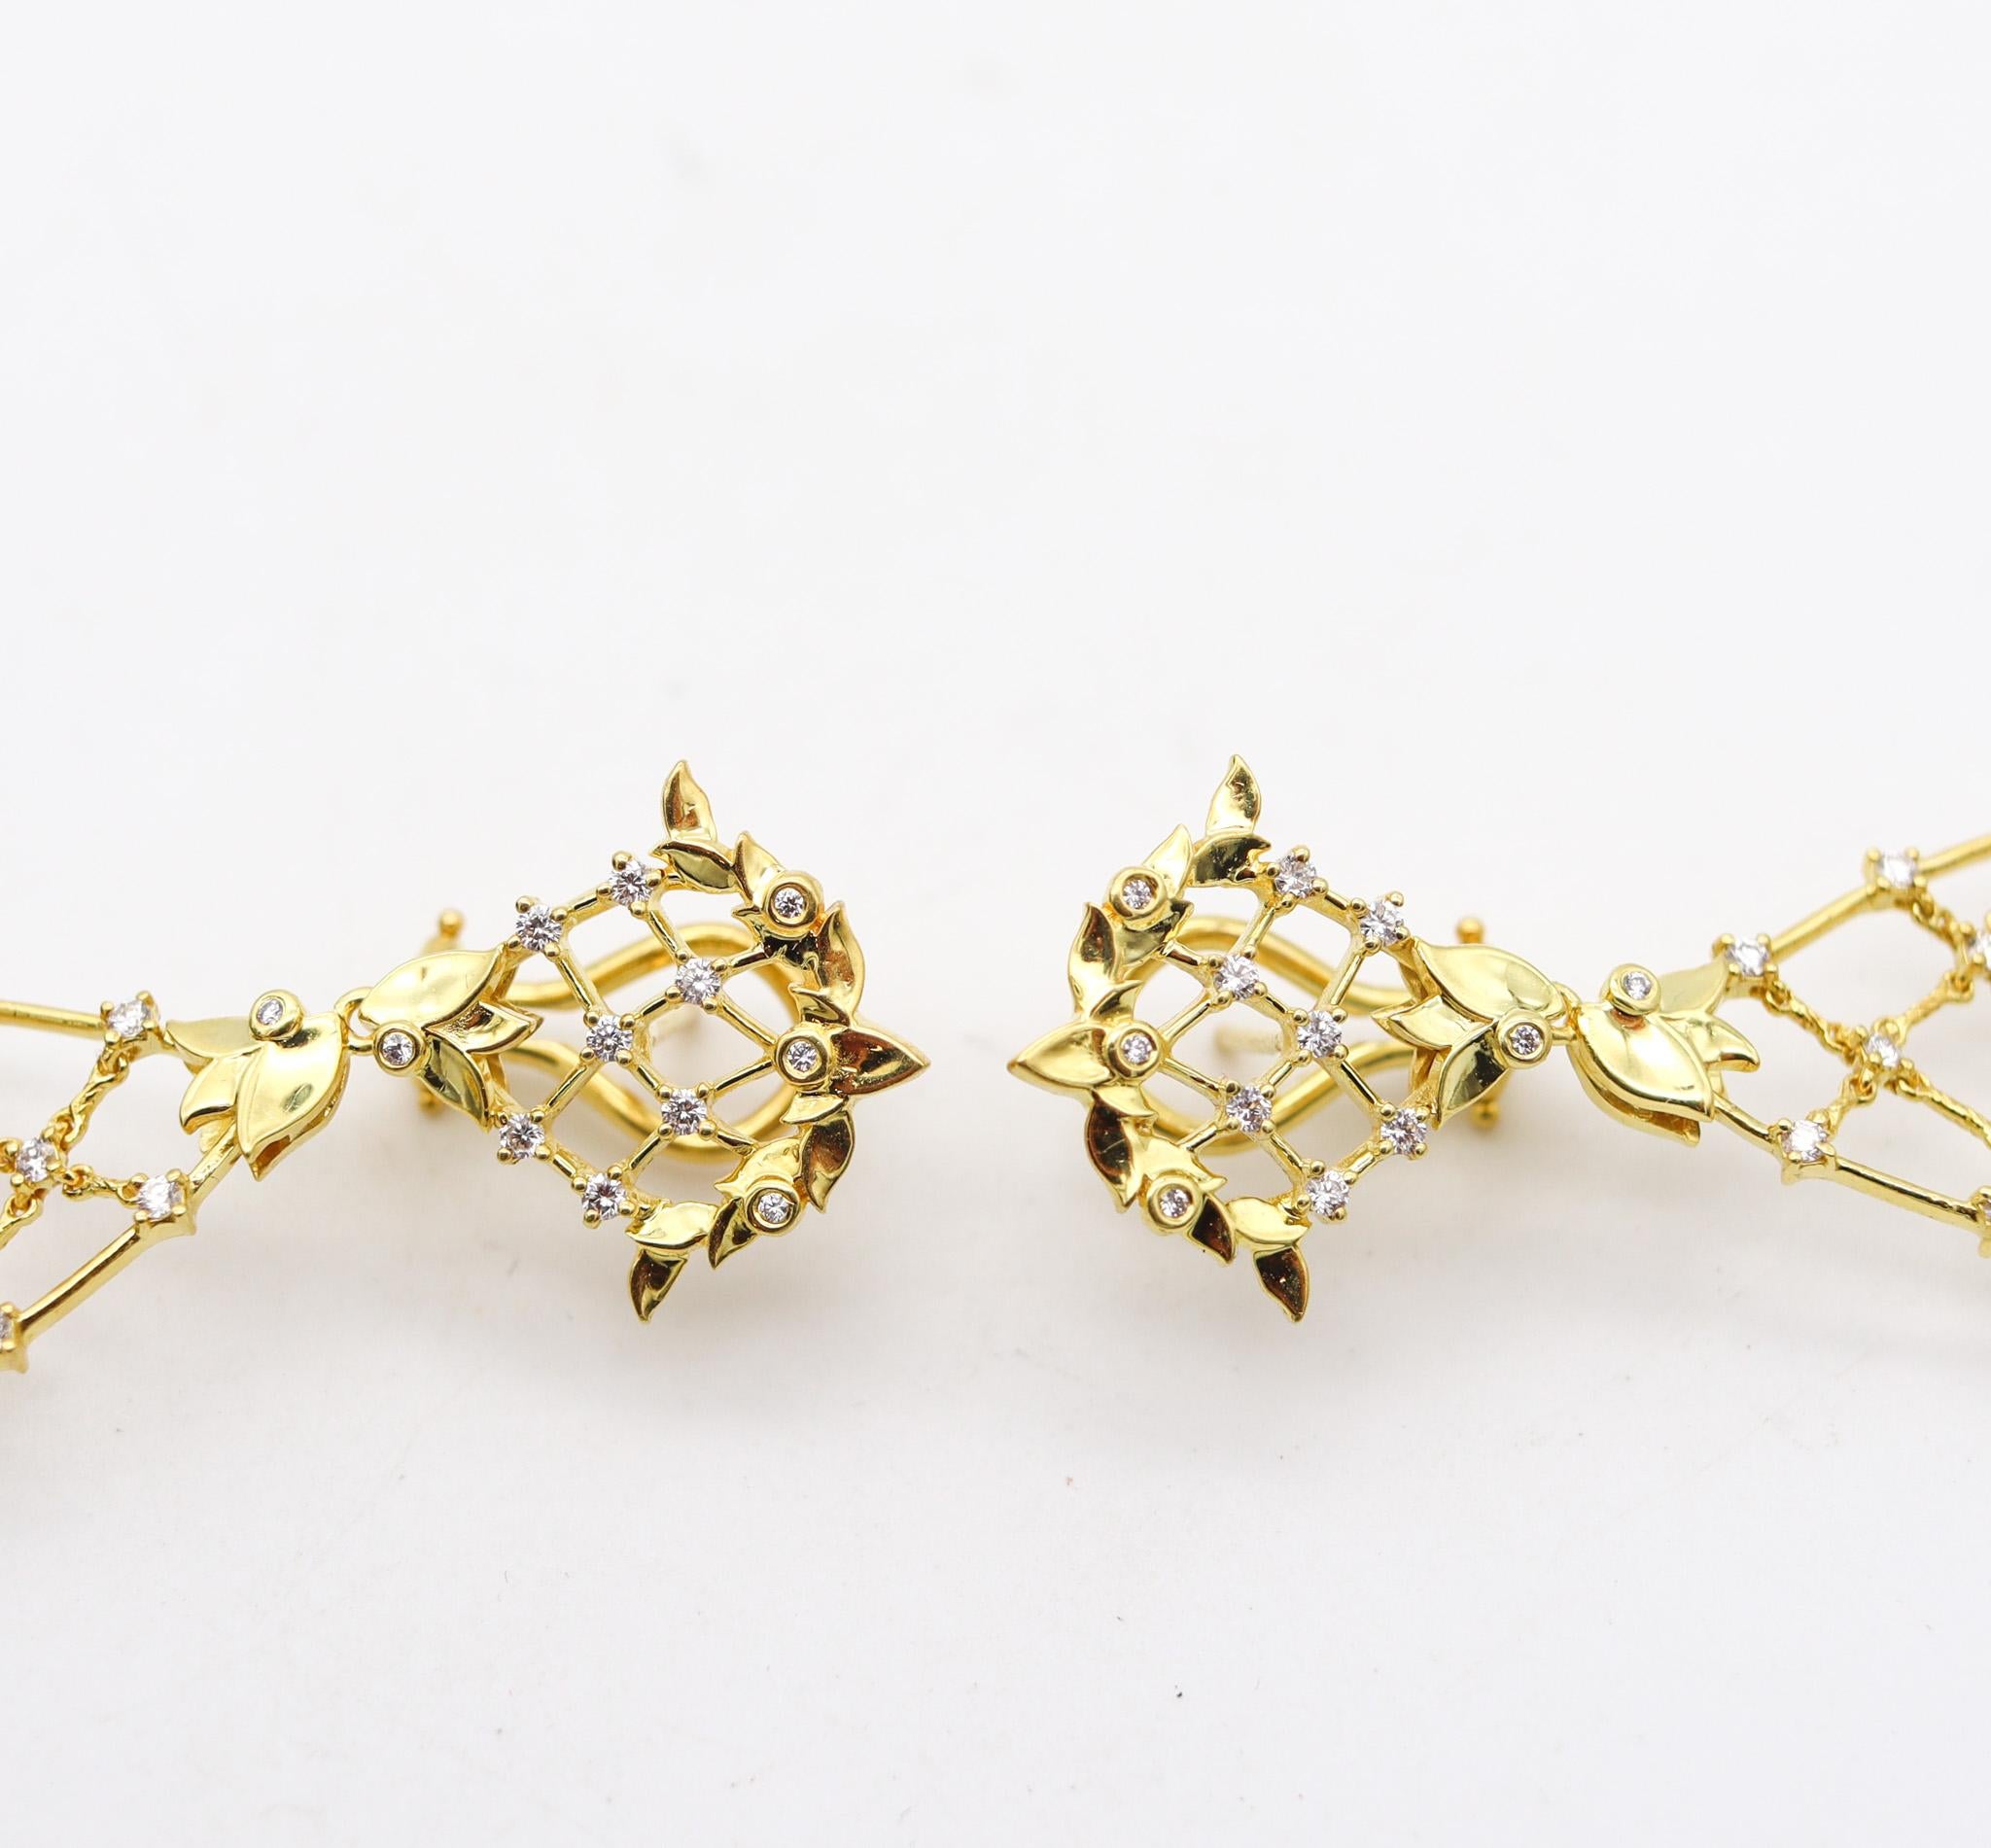 Taille brillant Paul Morelli Pendants d'oreilles Classic en or jaune 18Kt avec diamants